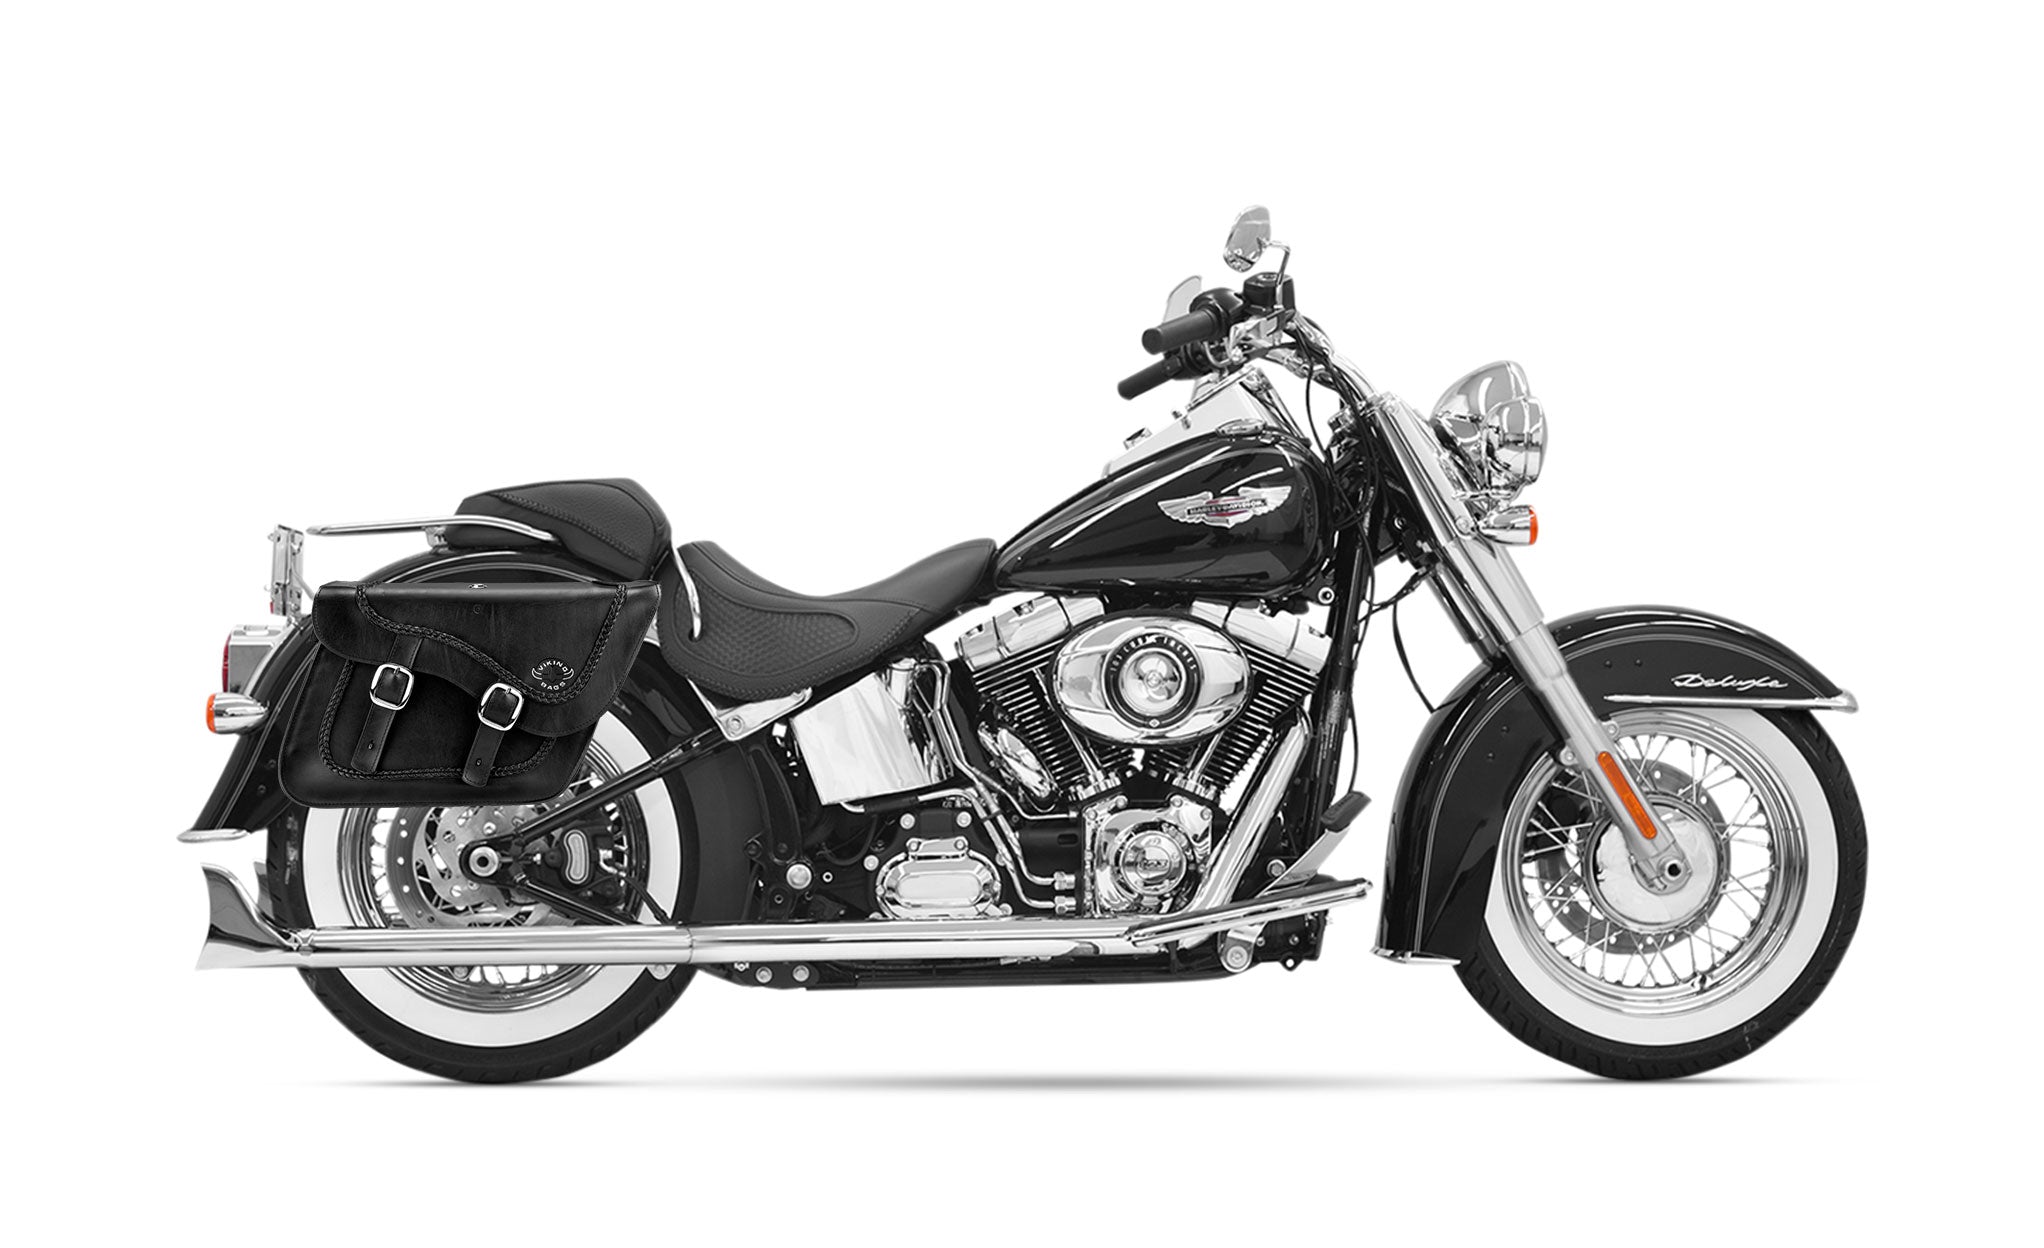 28L - Americano Braided Large Leather Motorcycle Saddlebags for Harley Softail Heritage FLST/I/C/CI on Bike Photo @expand